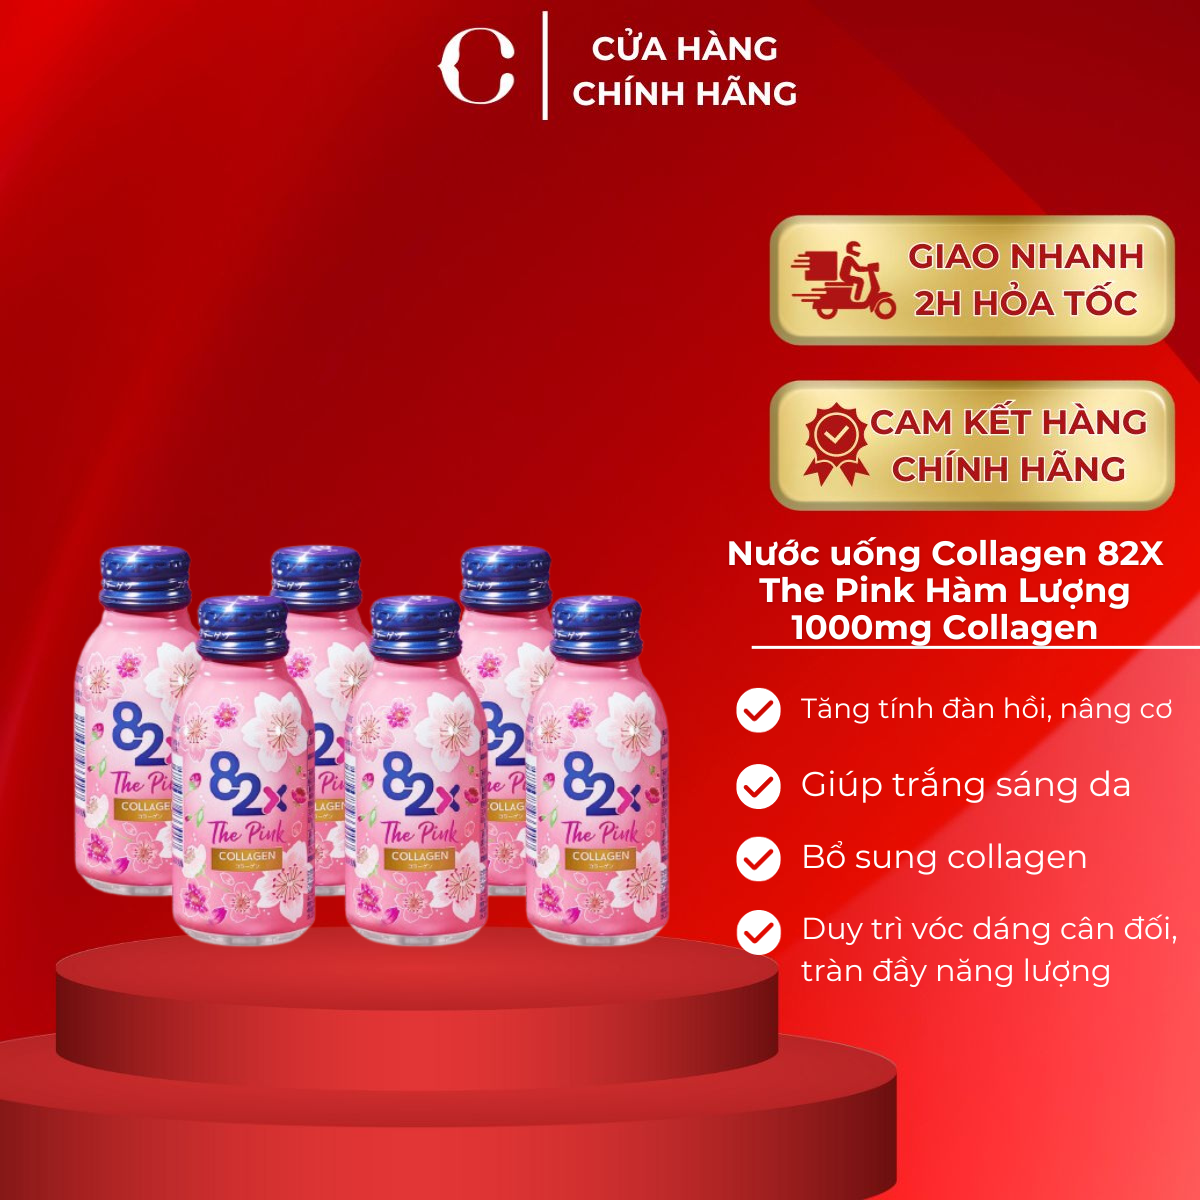 Nước uống Collagen 82X The Pink Hàm Lượng 1000mg Collagen